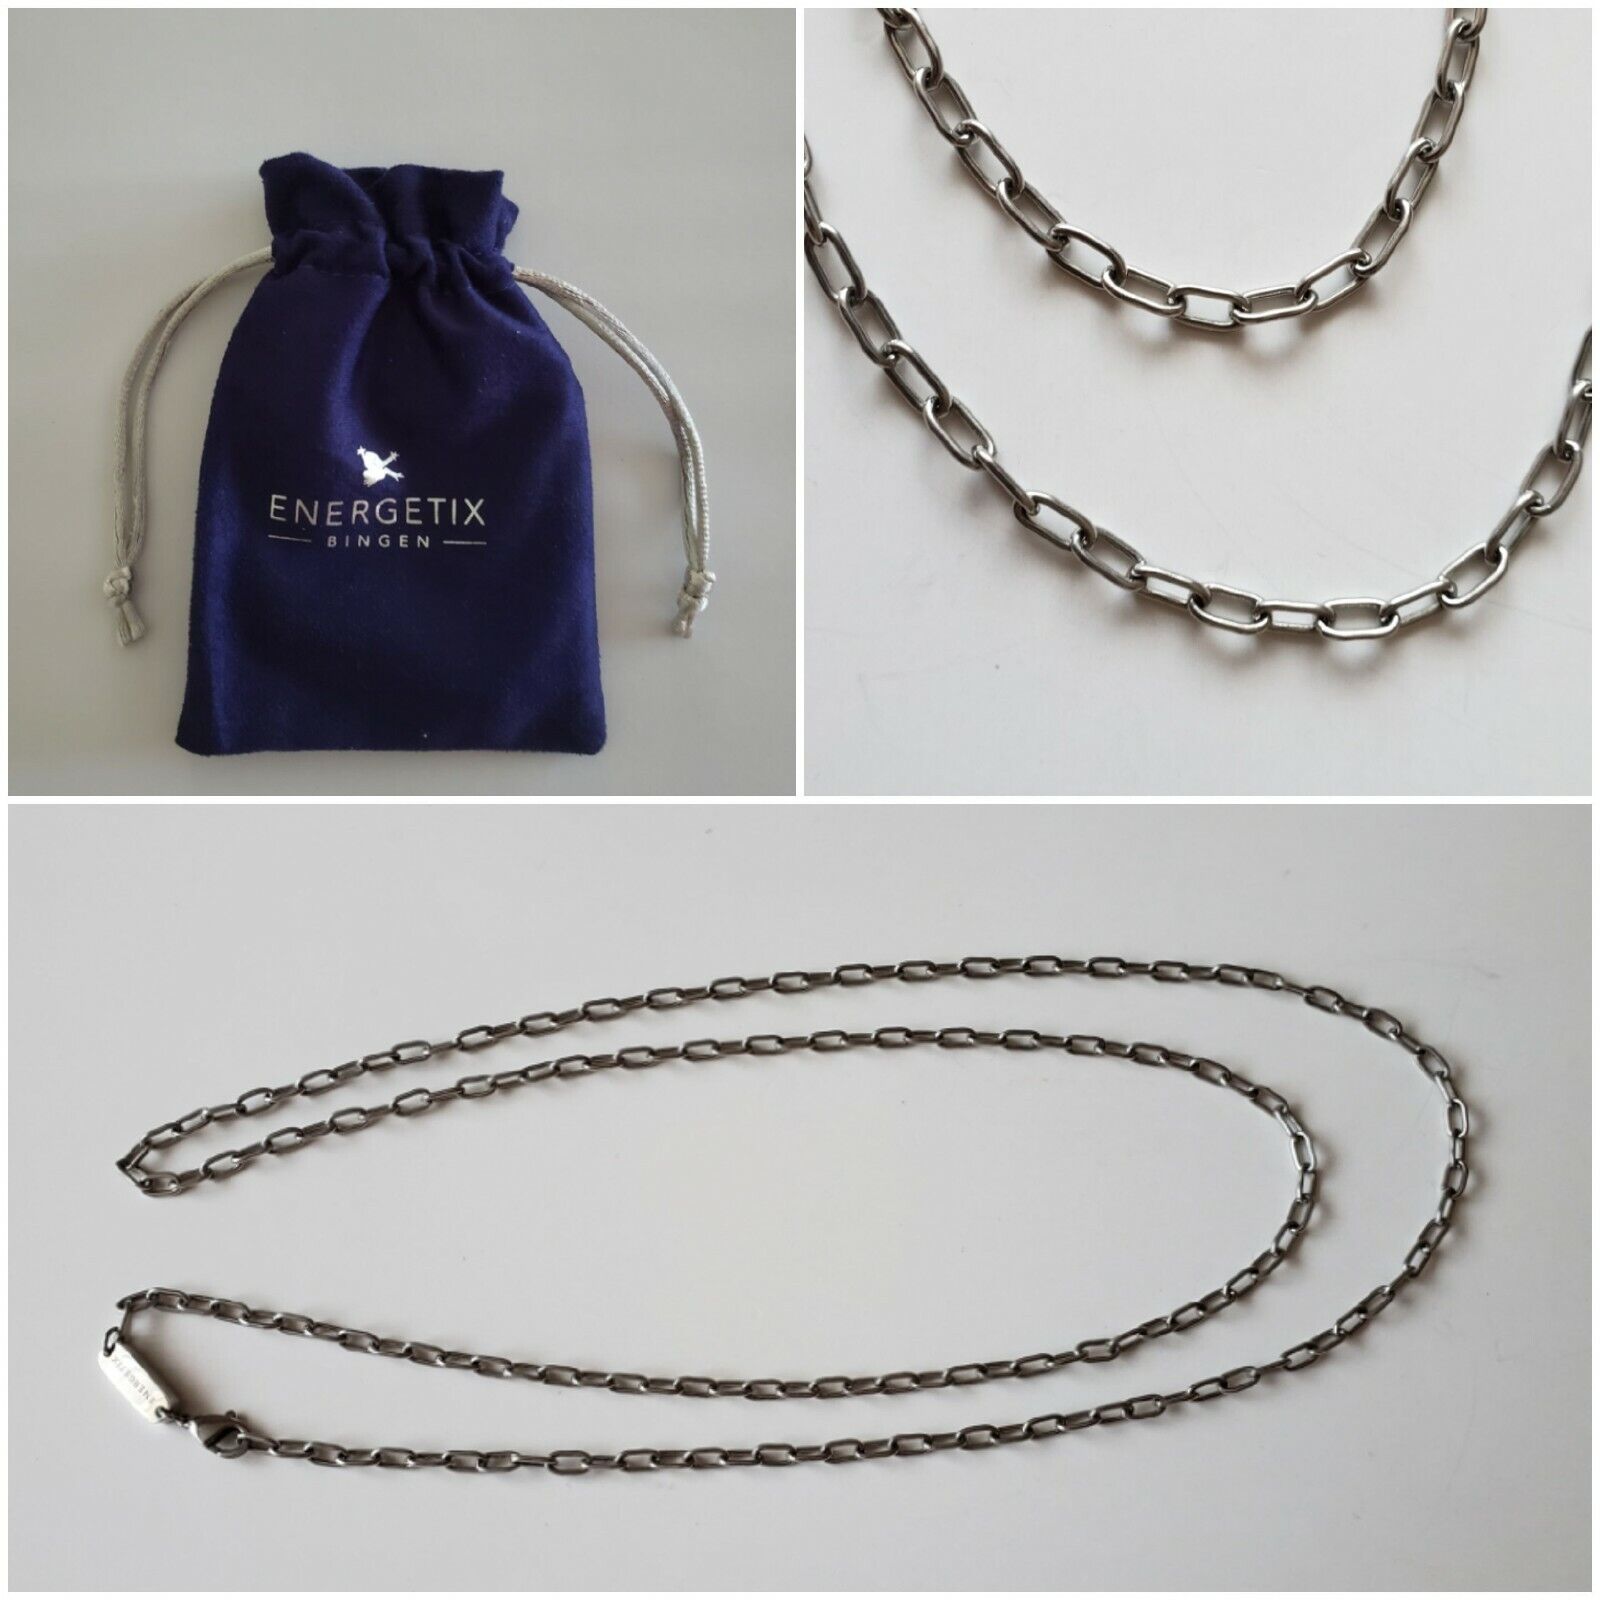 ENERGETIX Kette Halskette Nr. 2779-1   Edelstahl allergenfrei  -  90 cm - NEU 